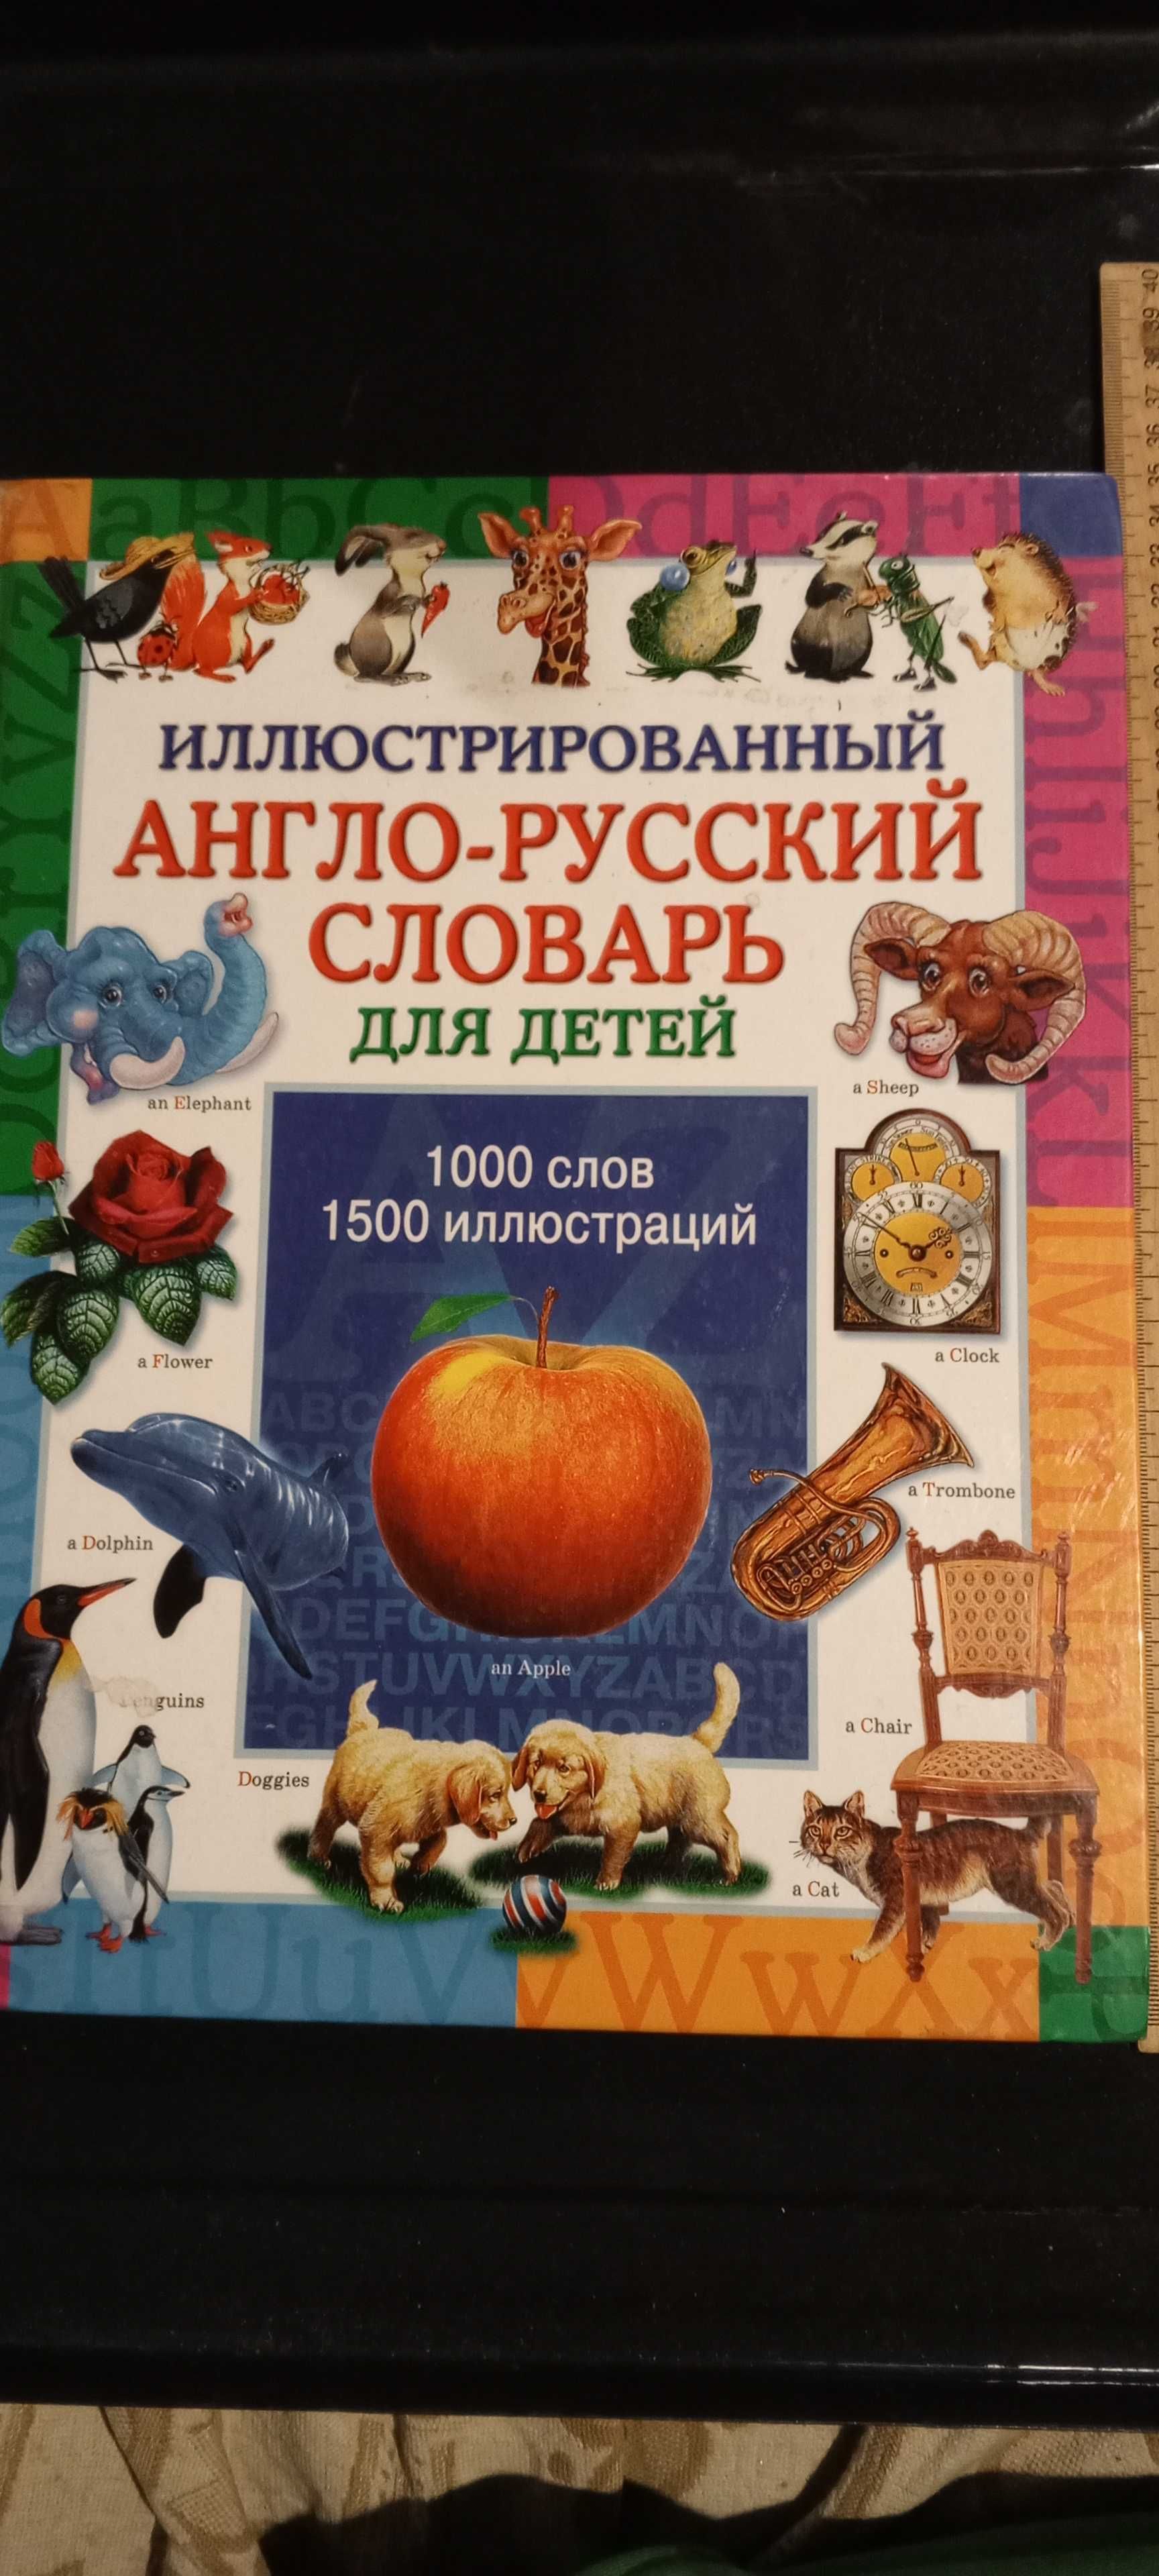 Иллюстрированный англо-русский словарь для детей.